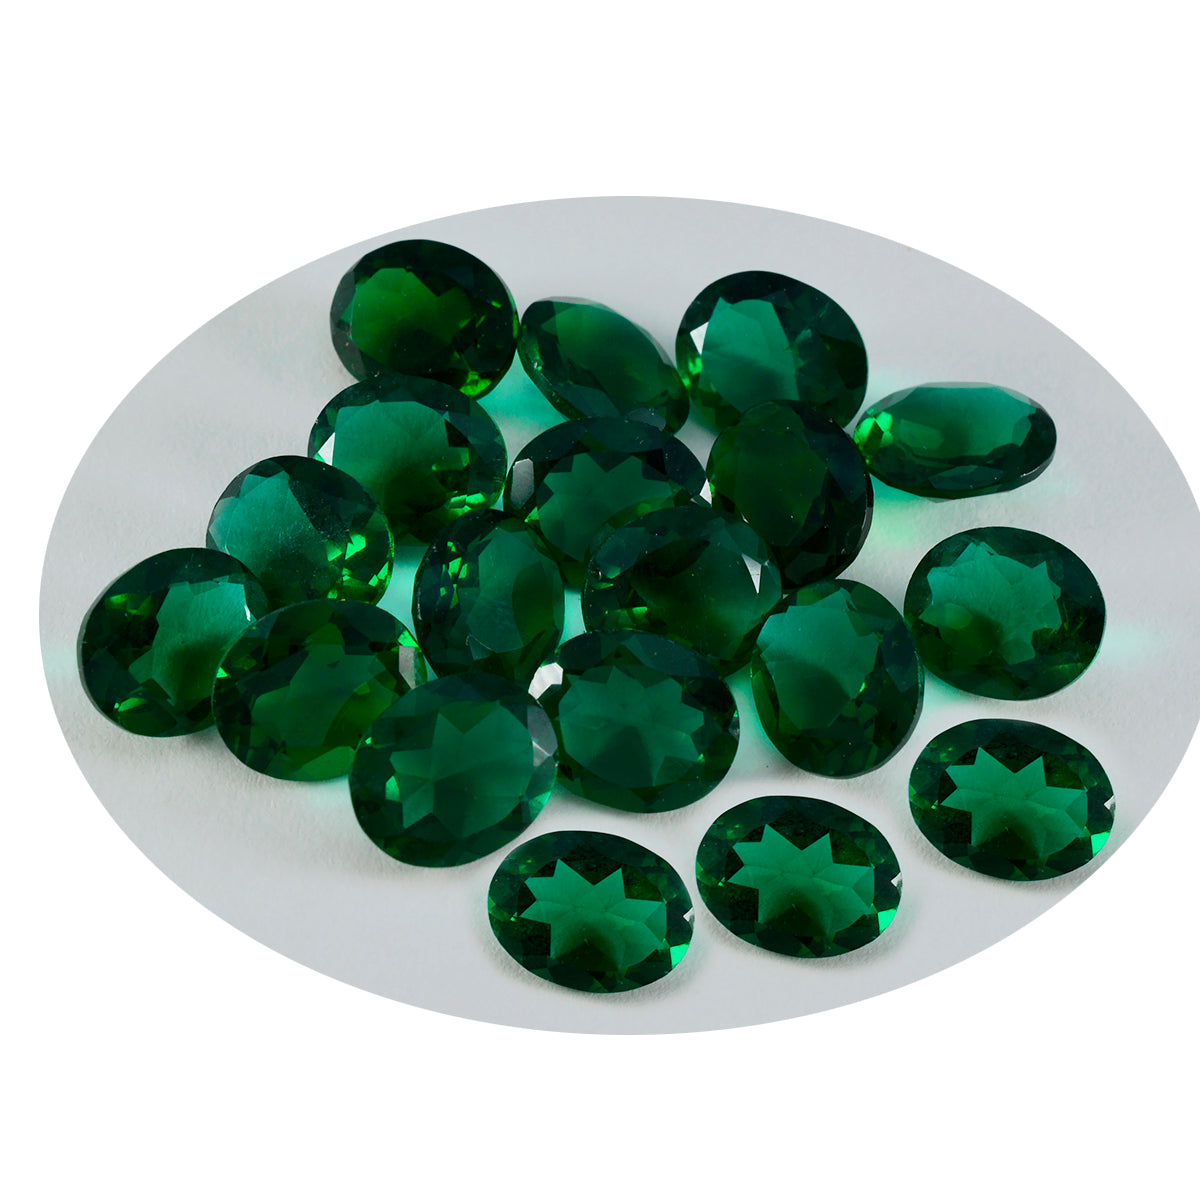 Riyogems 1PC Green Emerald CZ Faceted 6x8 mm Oval Shape pretty Quality Loose Gemstone